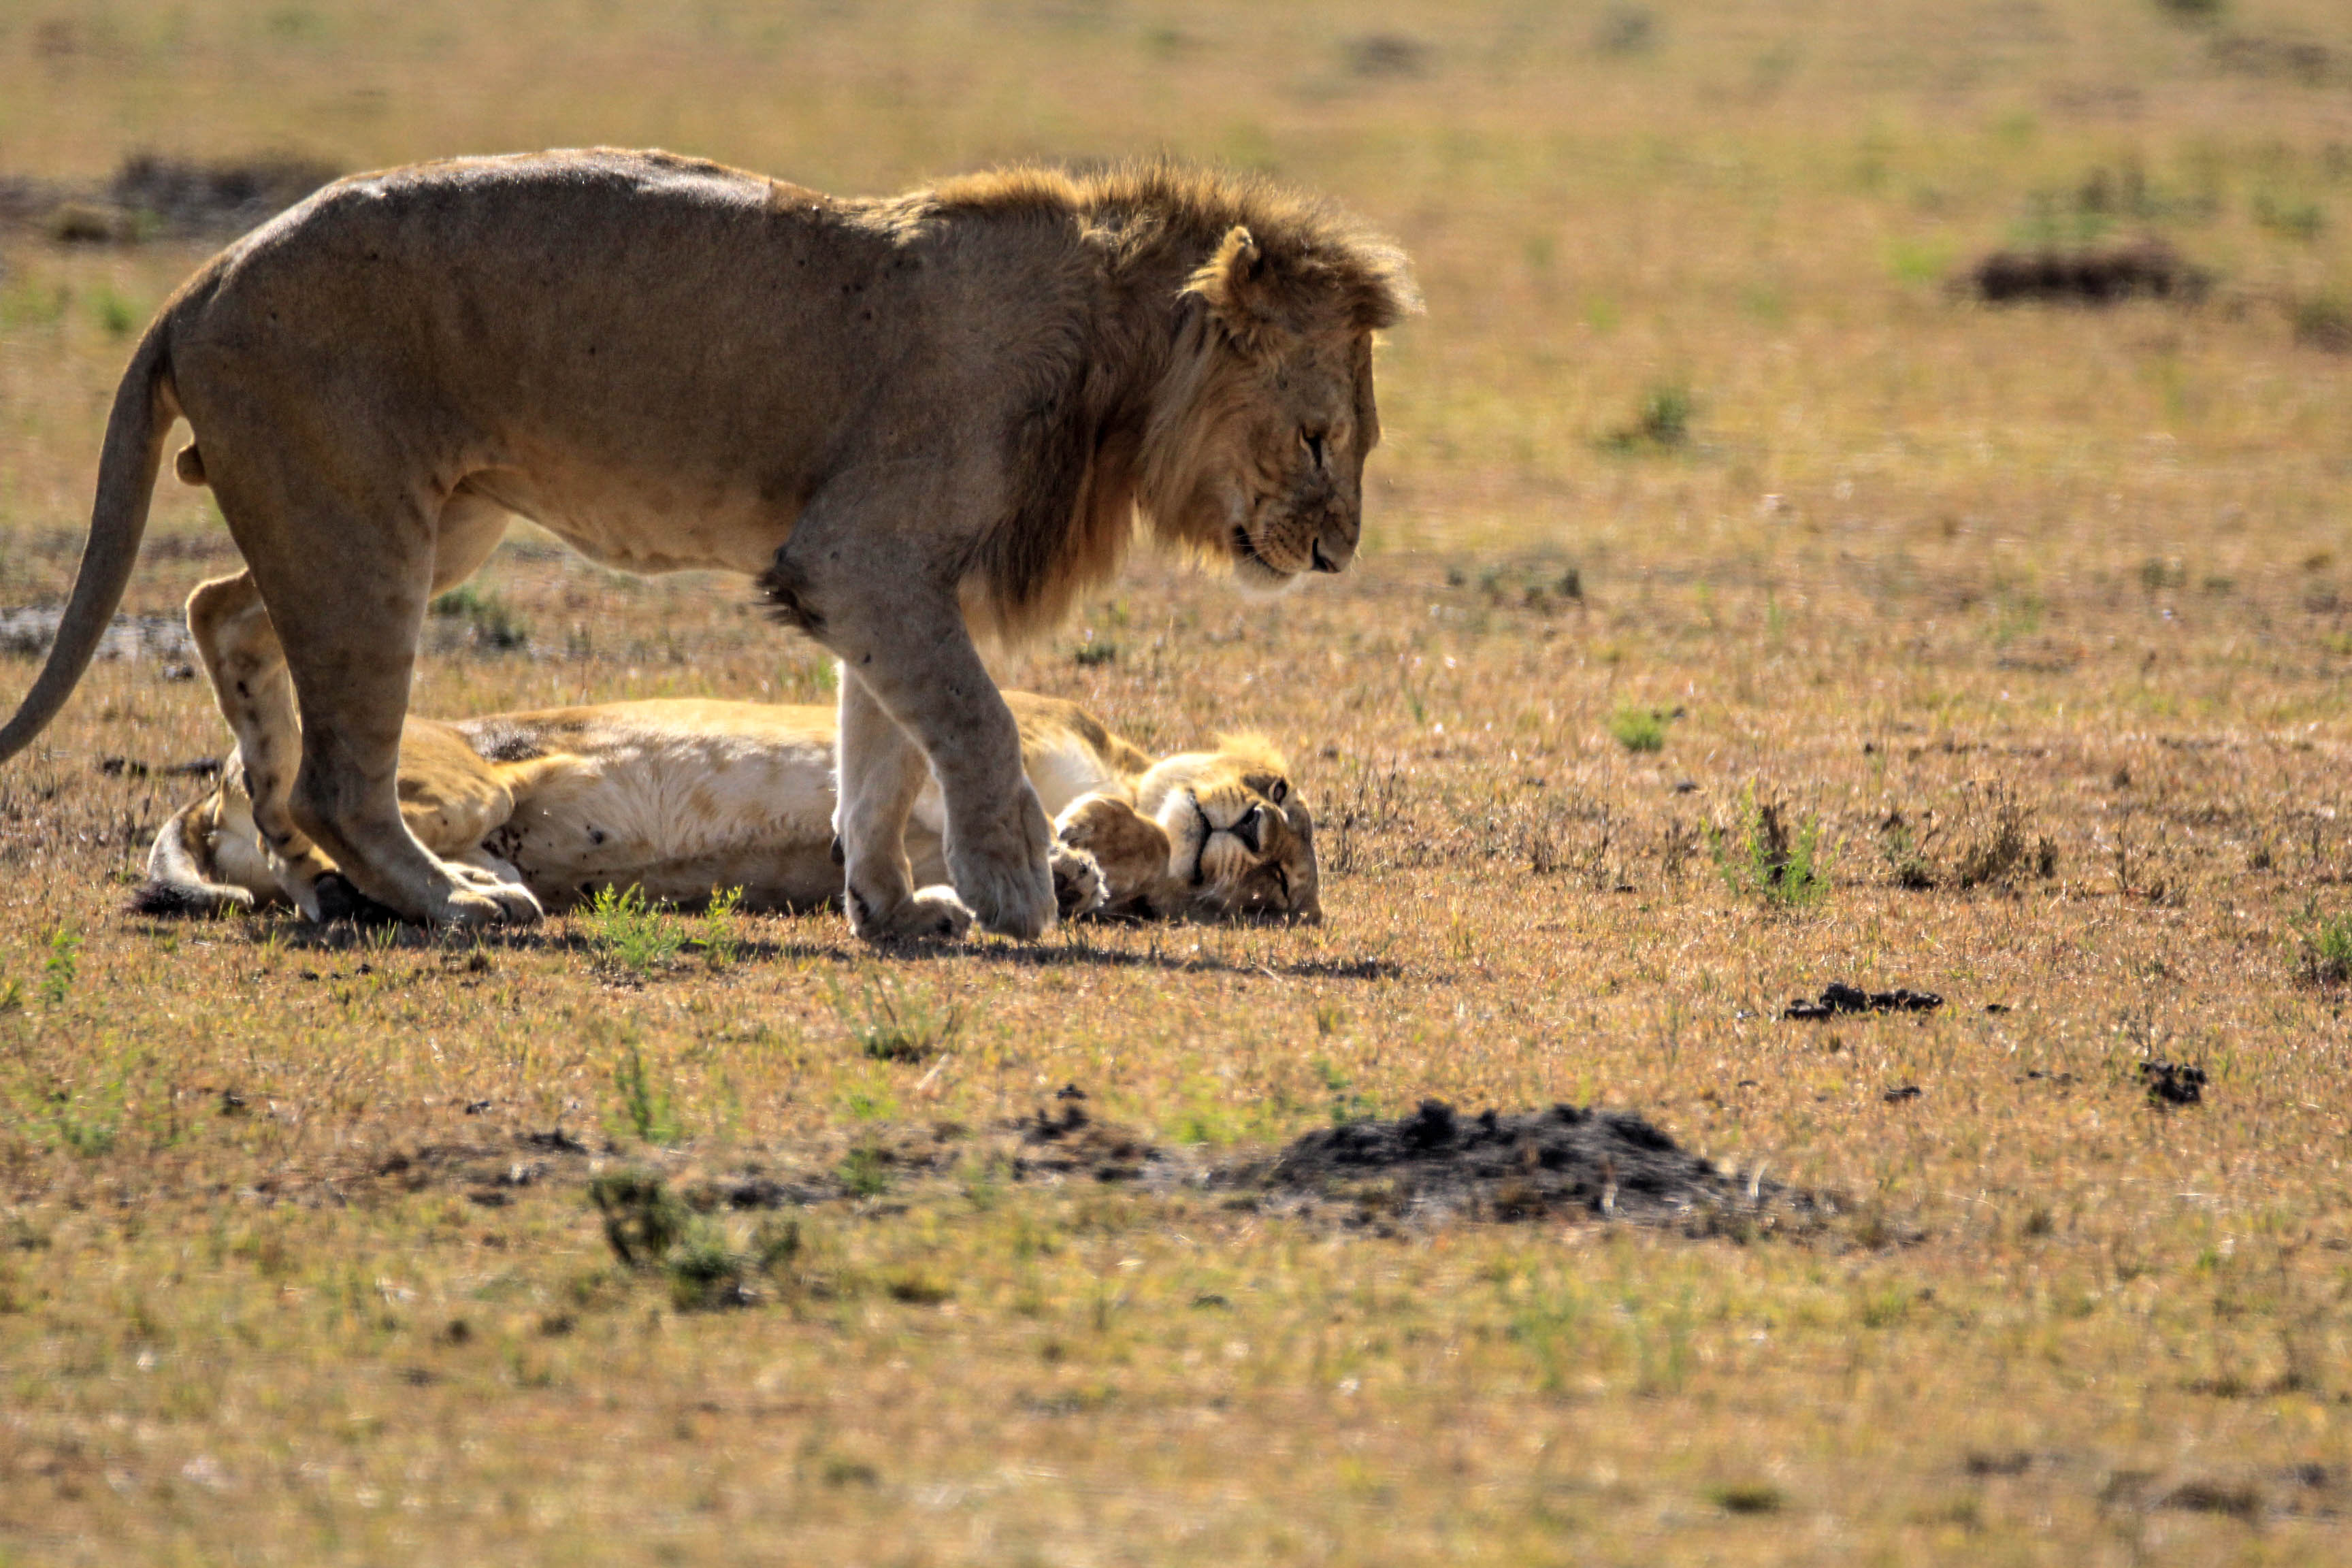 非洲草原上正在交配的狮子:动物世界里的少儿不宜